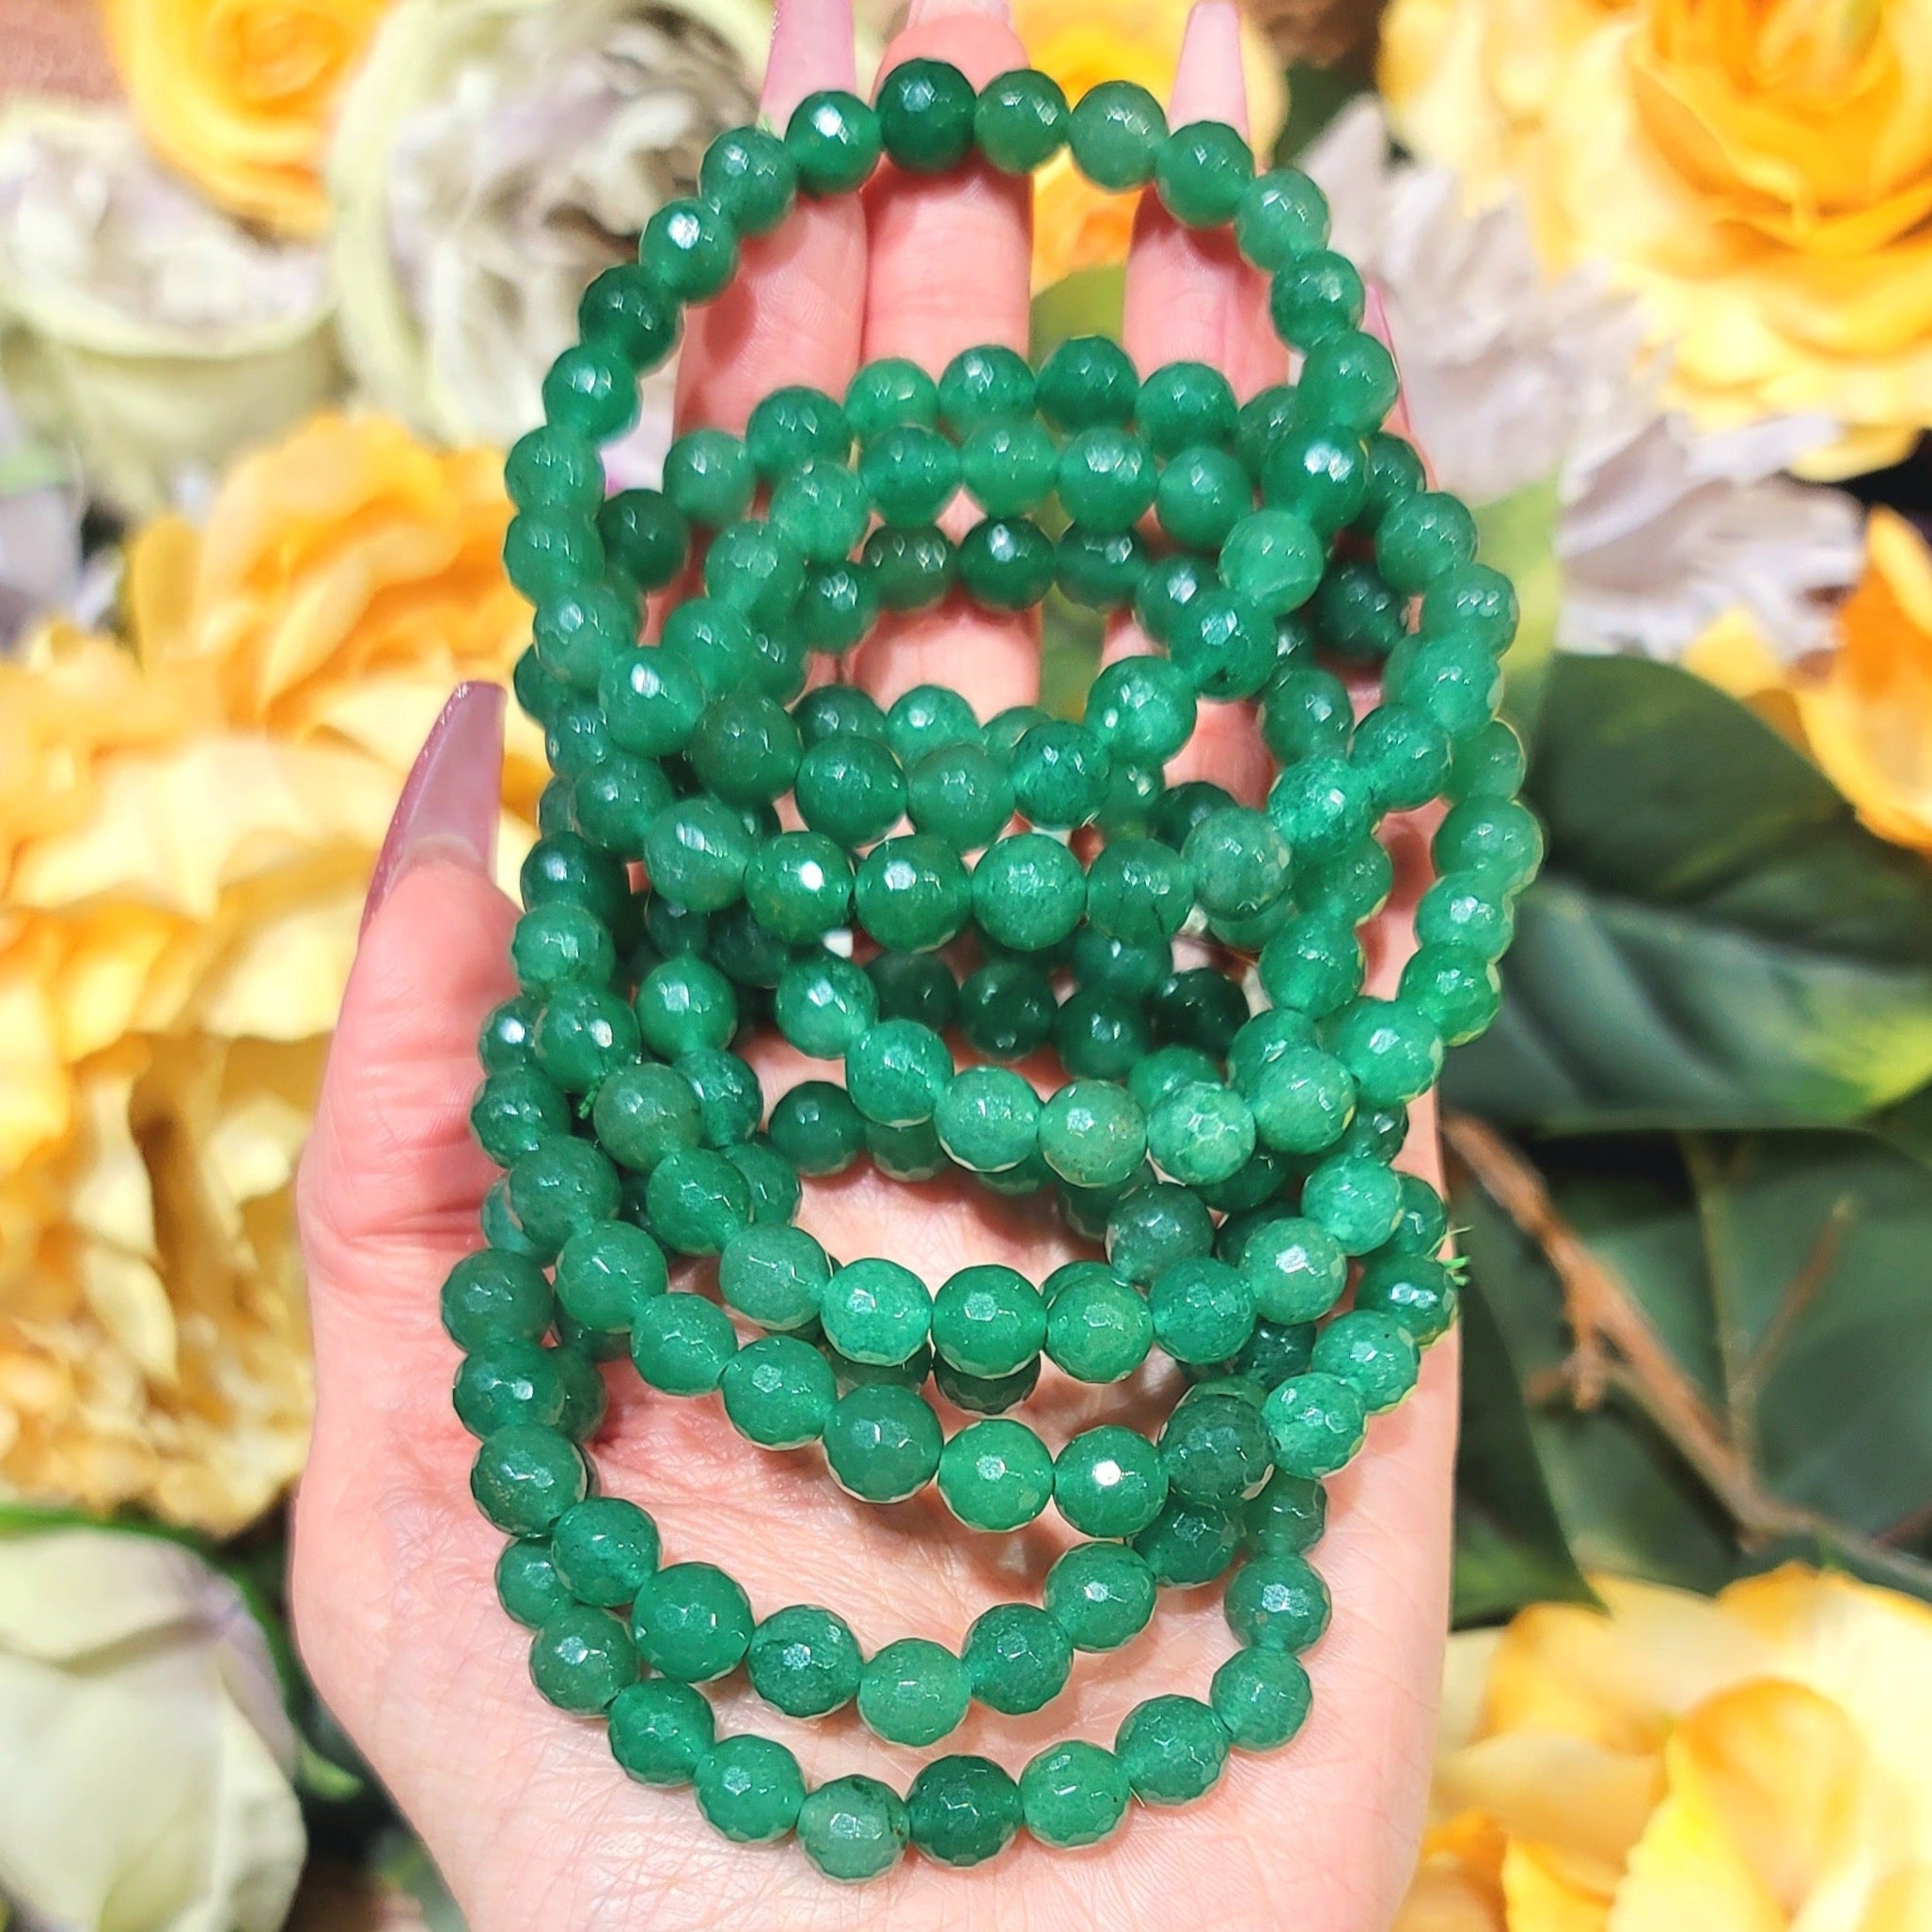 Green Aventurine Faceted Bracelet for Good Luck & Prosperity